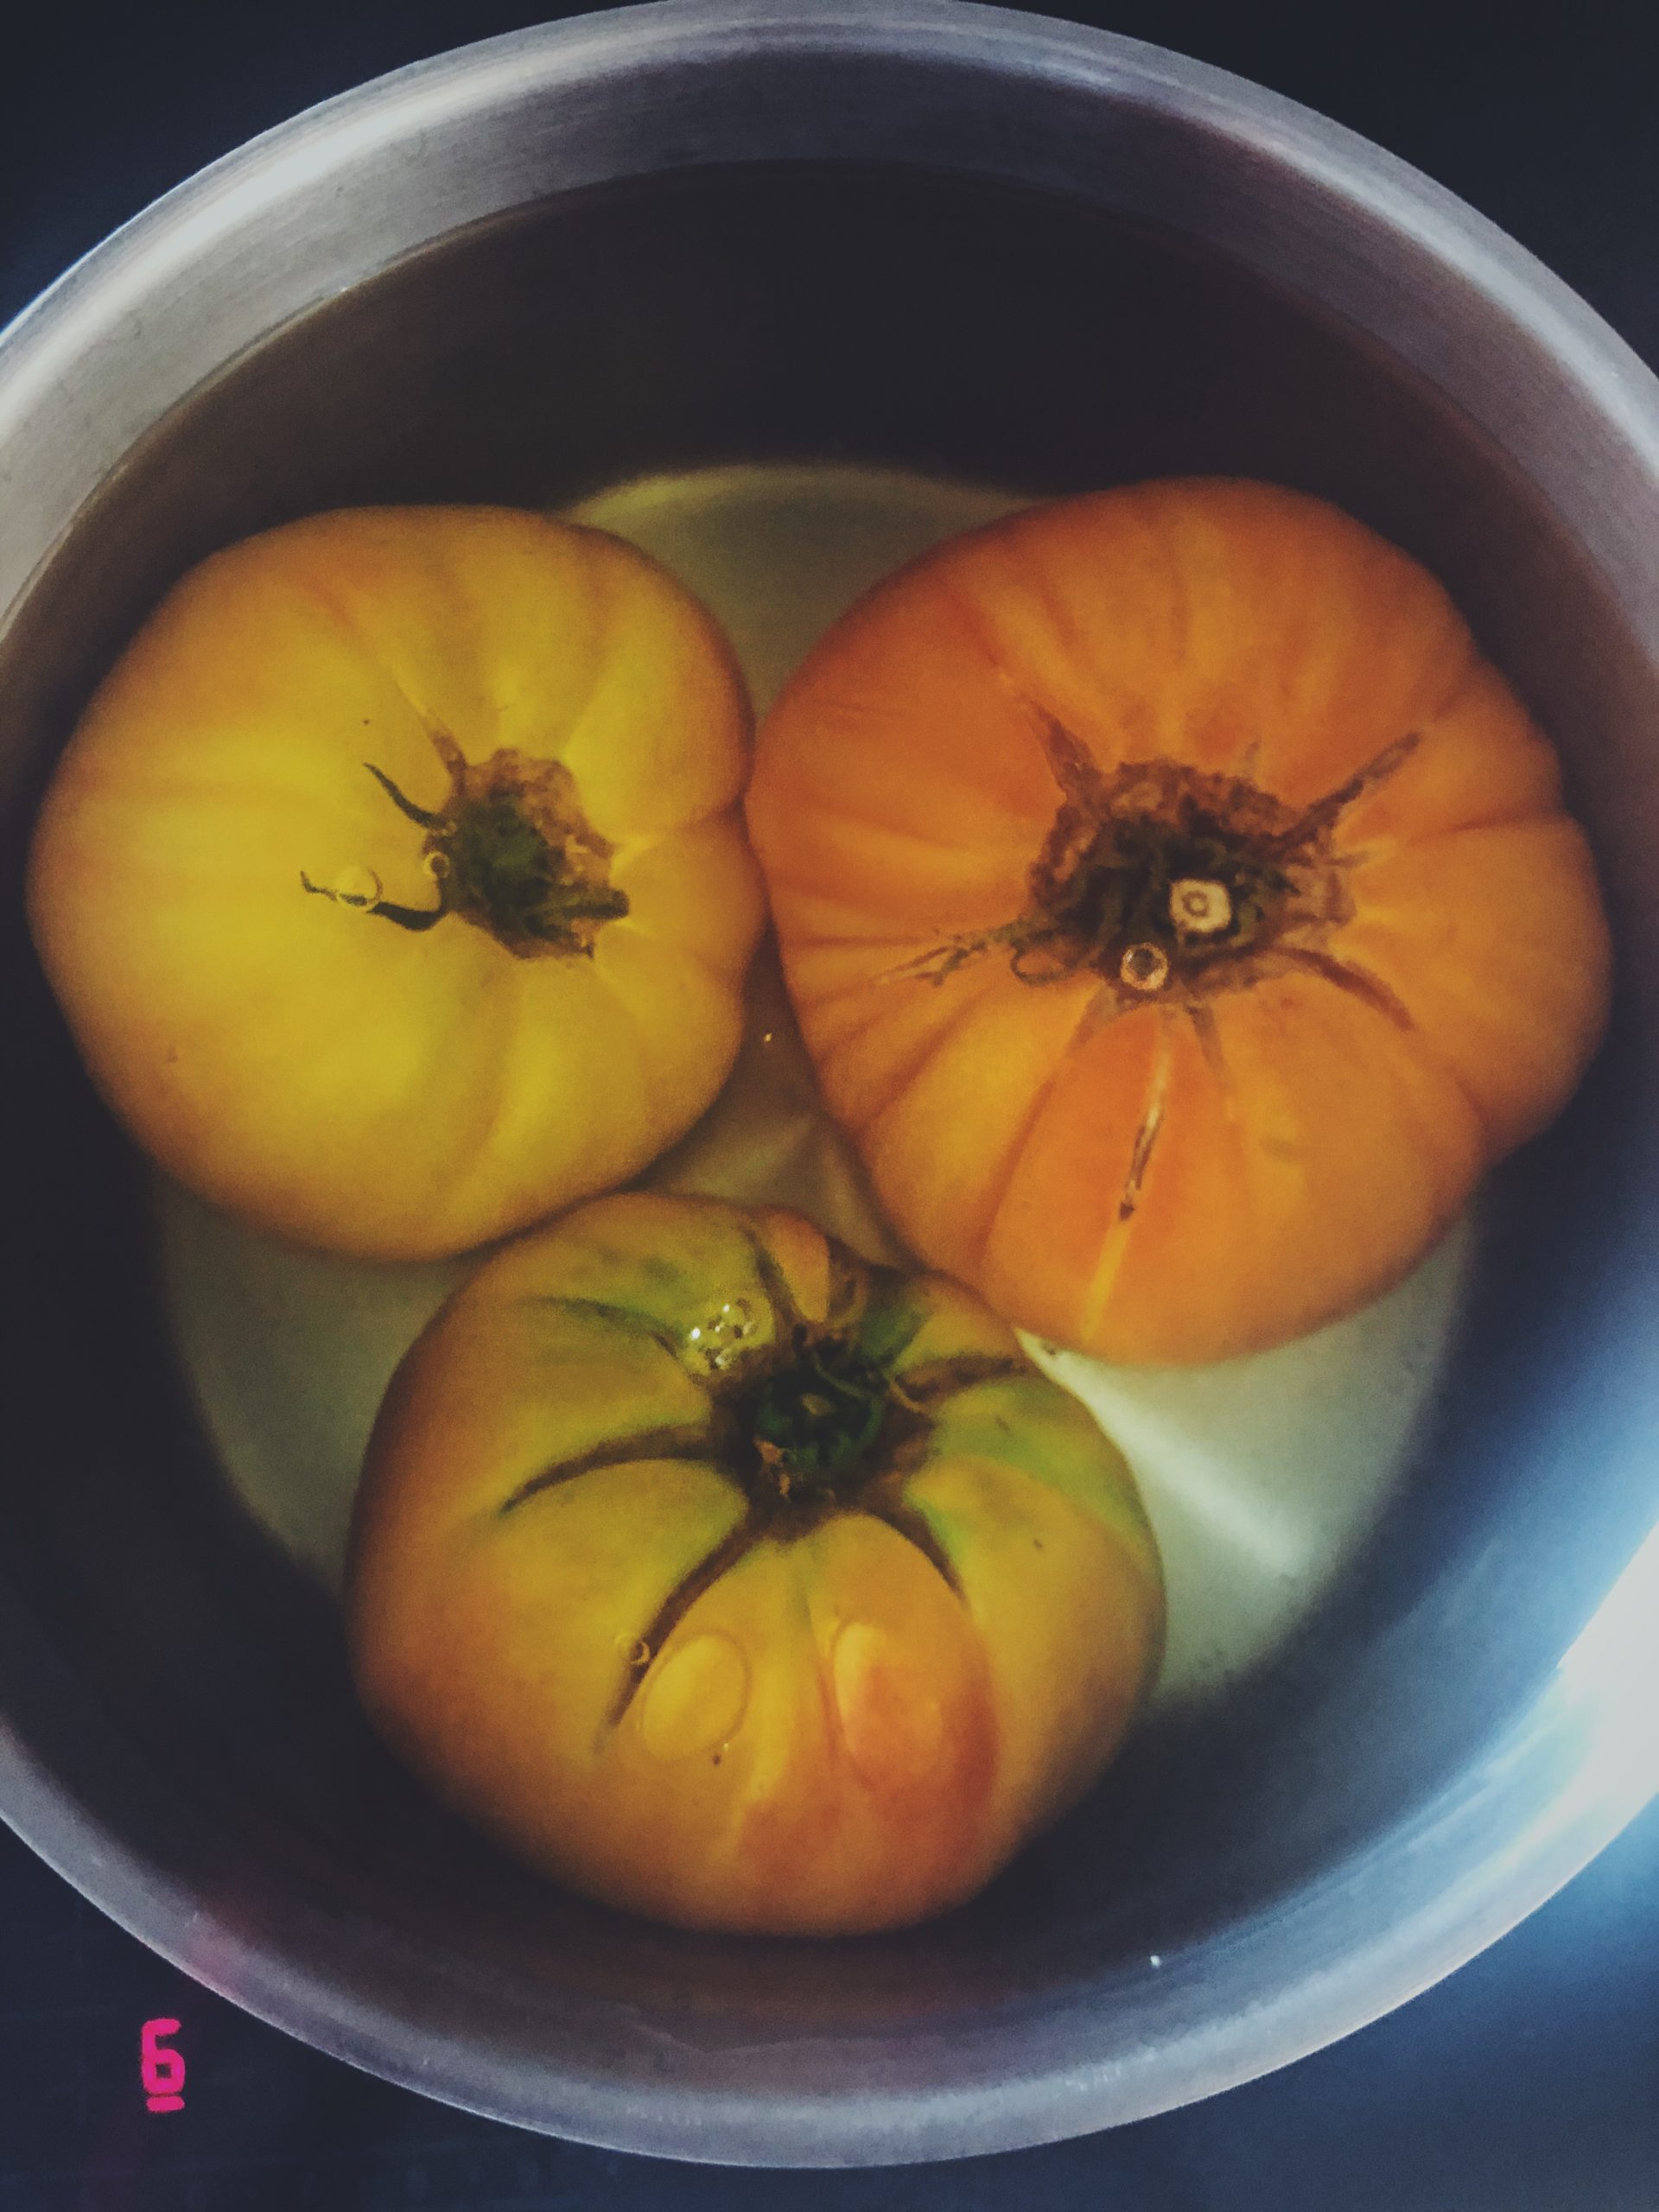 Jak obrać pomidora ze skórki - pomidory zanurzone we wrzątku